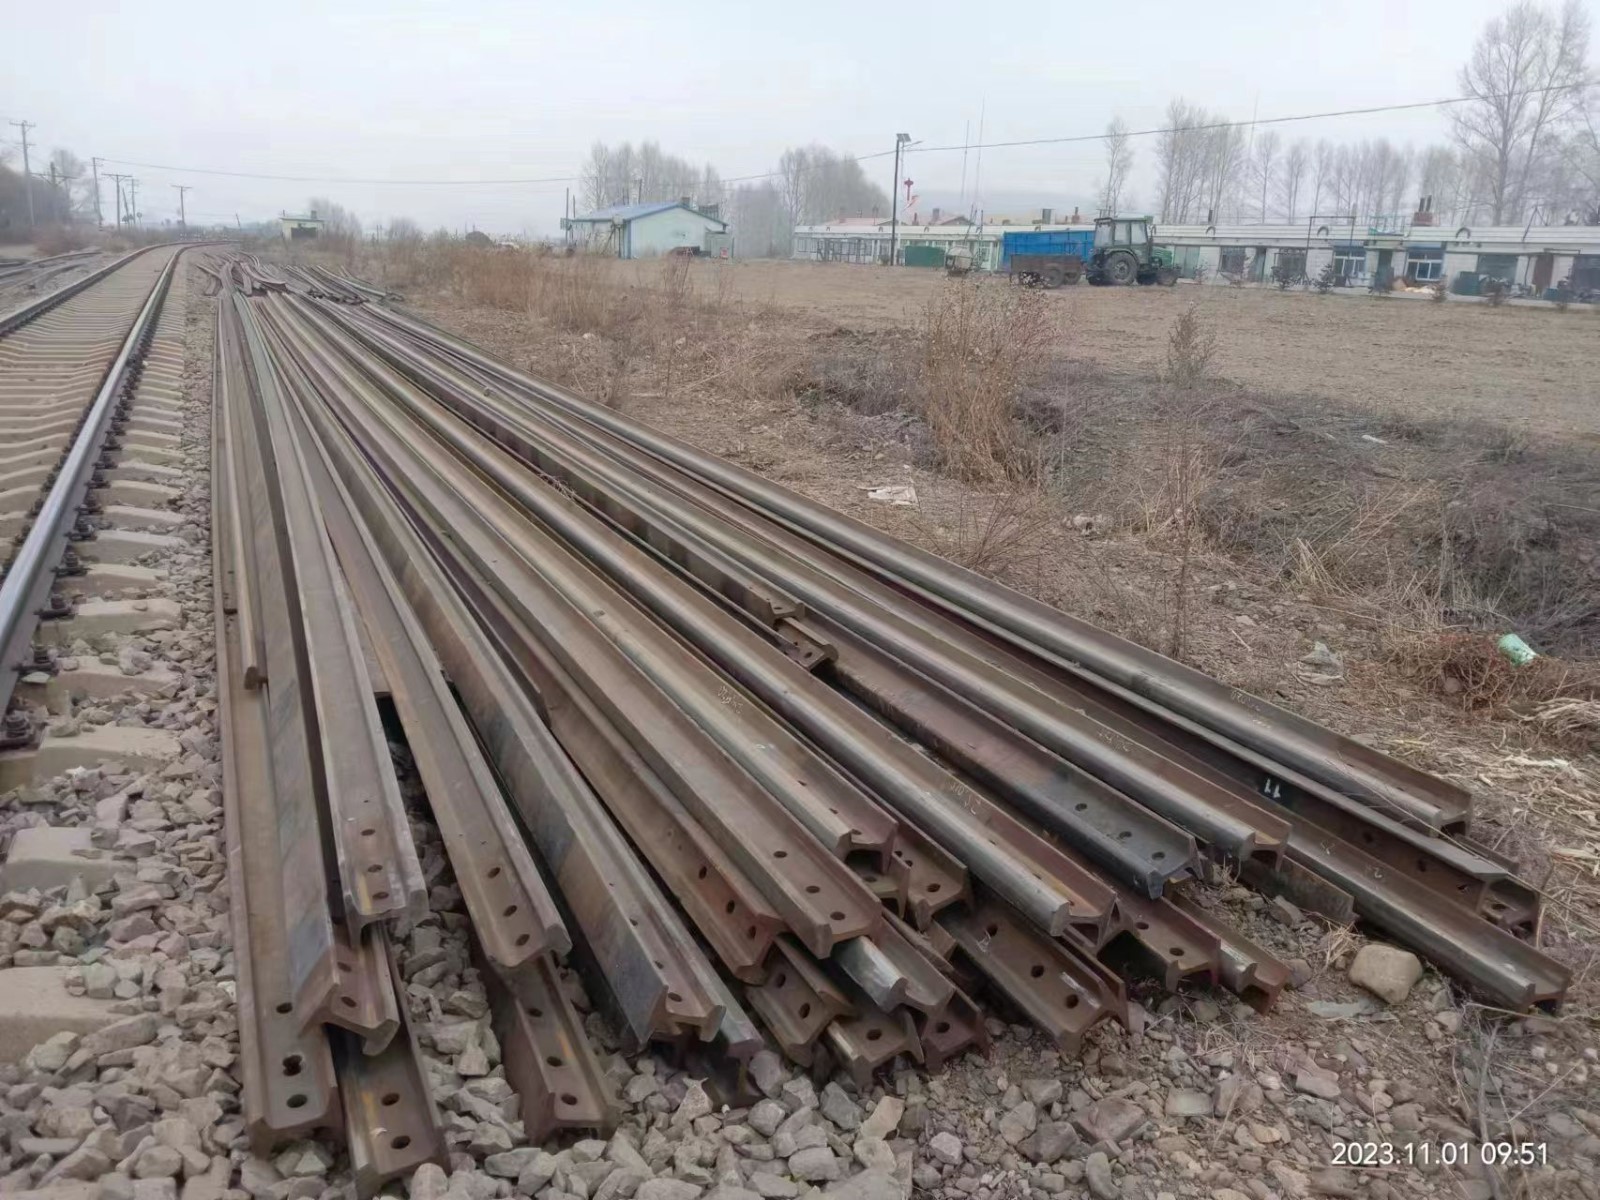 嫩江铁路公司一批报废钢轨 废铁和报废锅炉分别交易出售招标